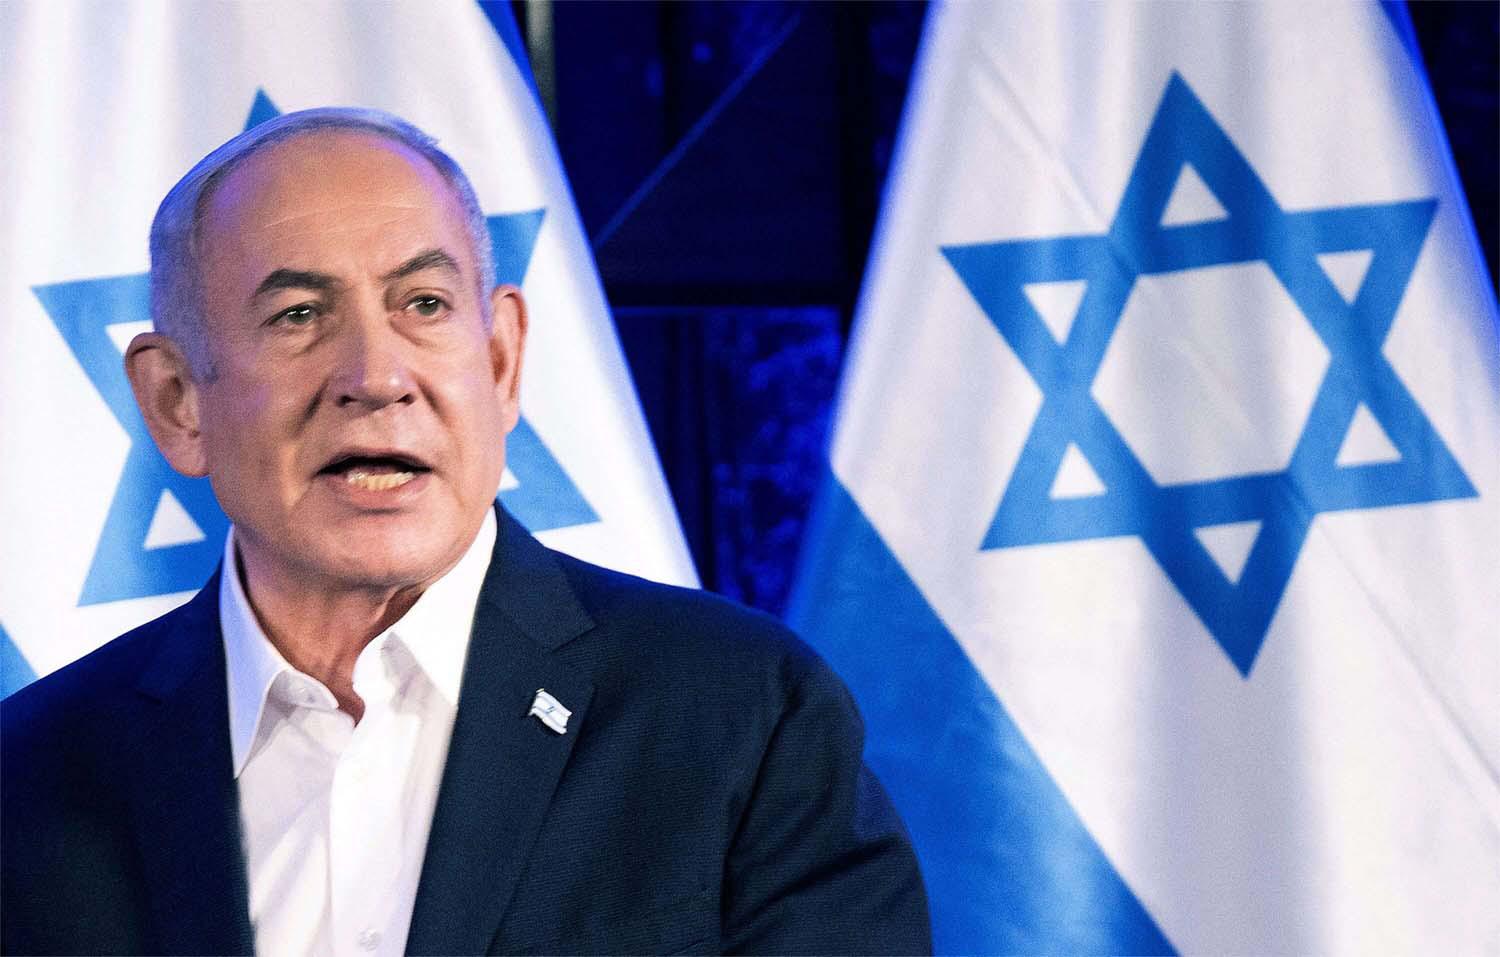 Netanyahu's political future in tatters